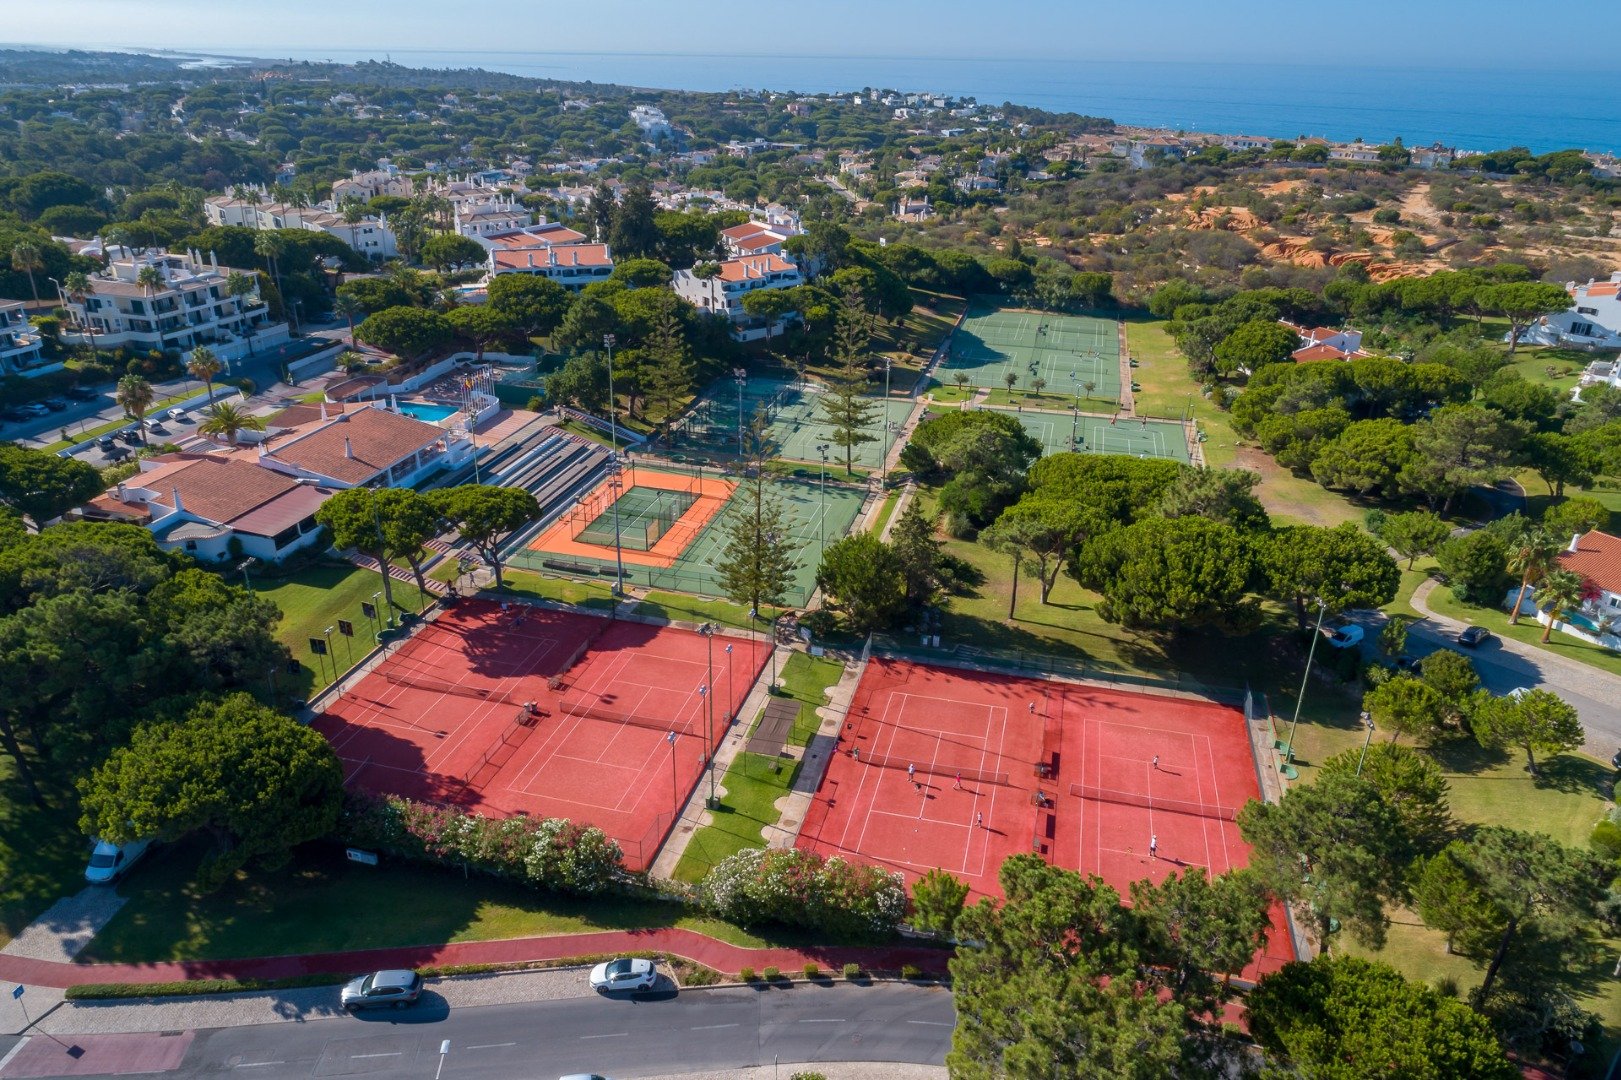 Primeiro torneio internacional ténis 2021 em Portugal é em Vale do Lobo